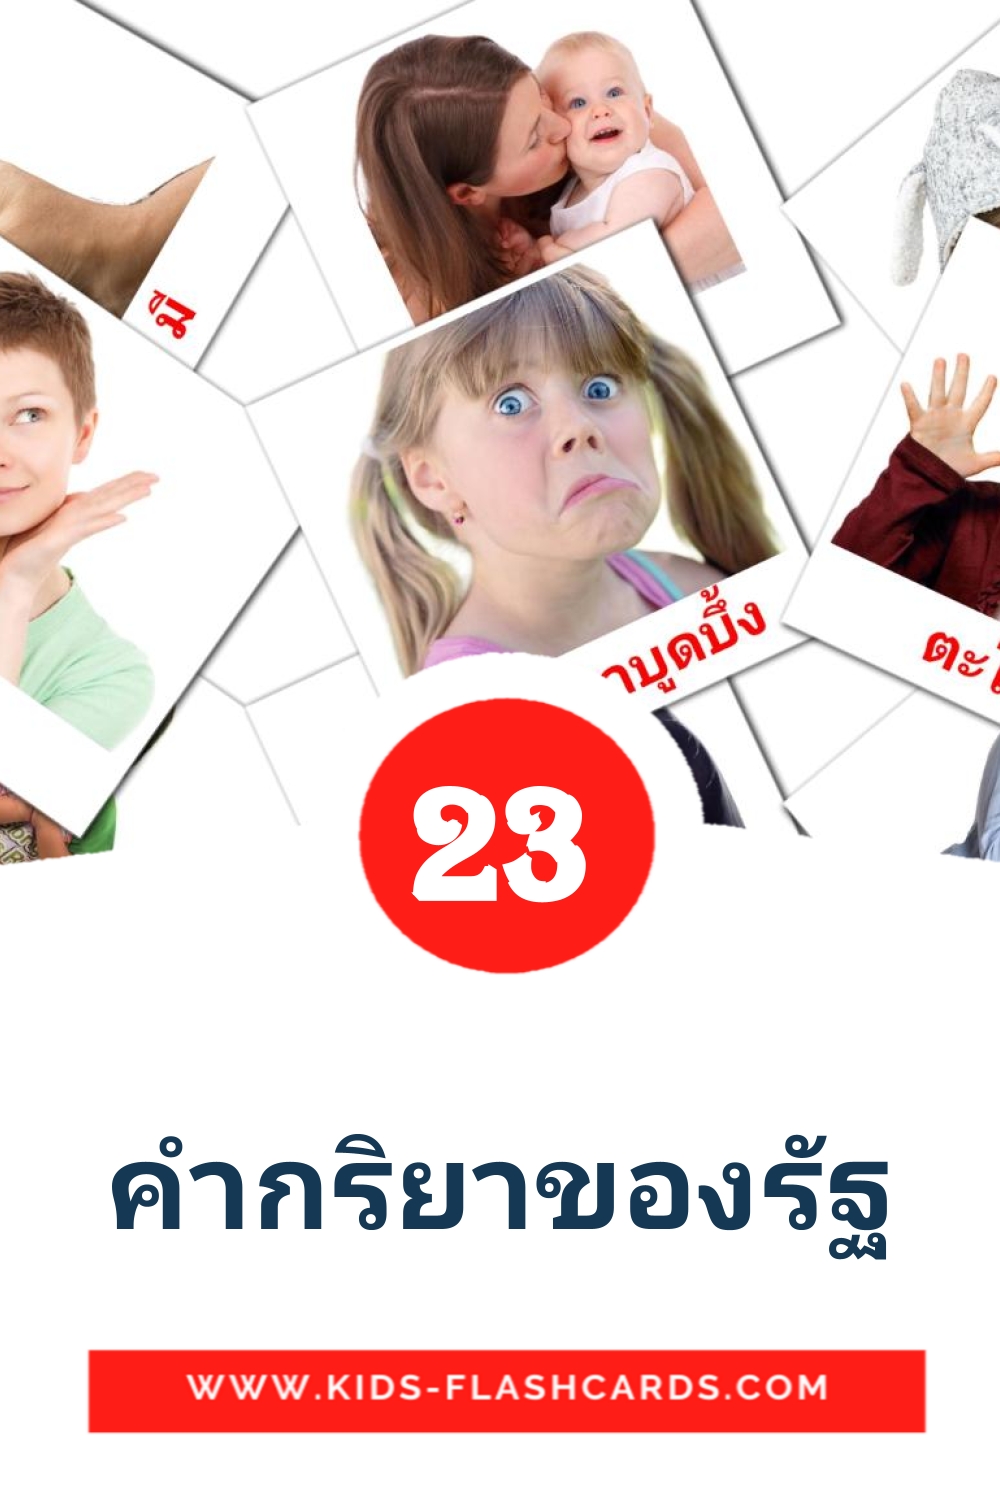 23 carte illustrate di คํากริยาของรัฐ per la scuola materna in tailandese